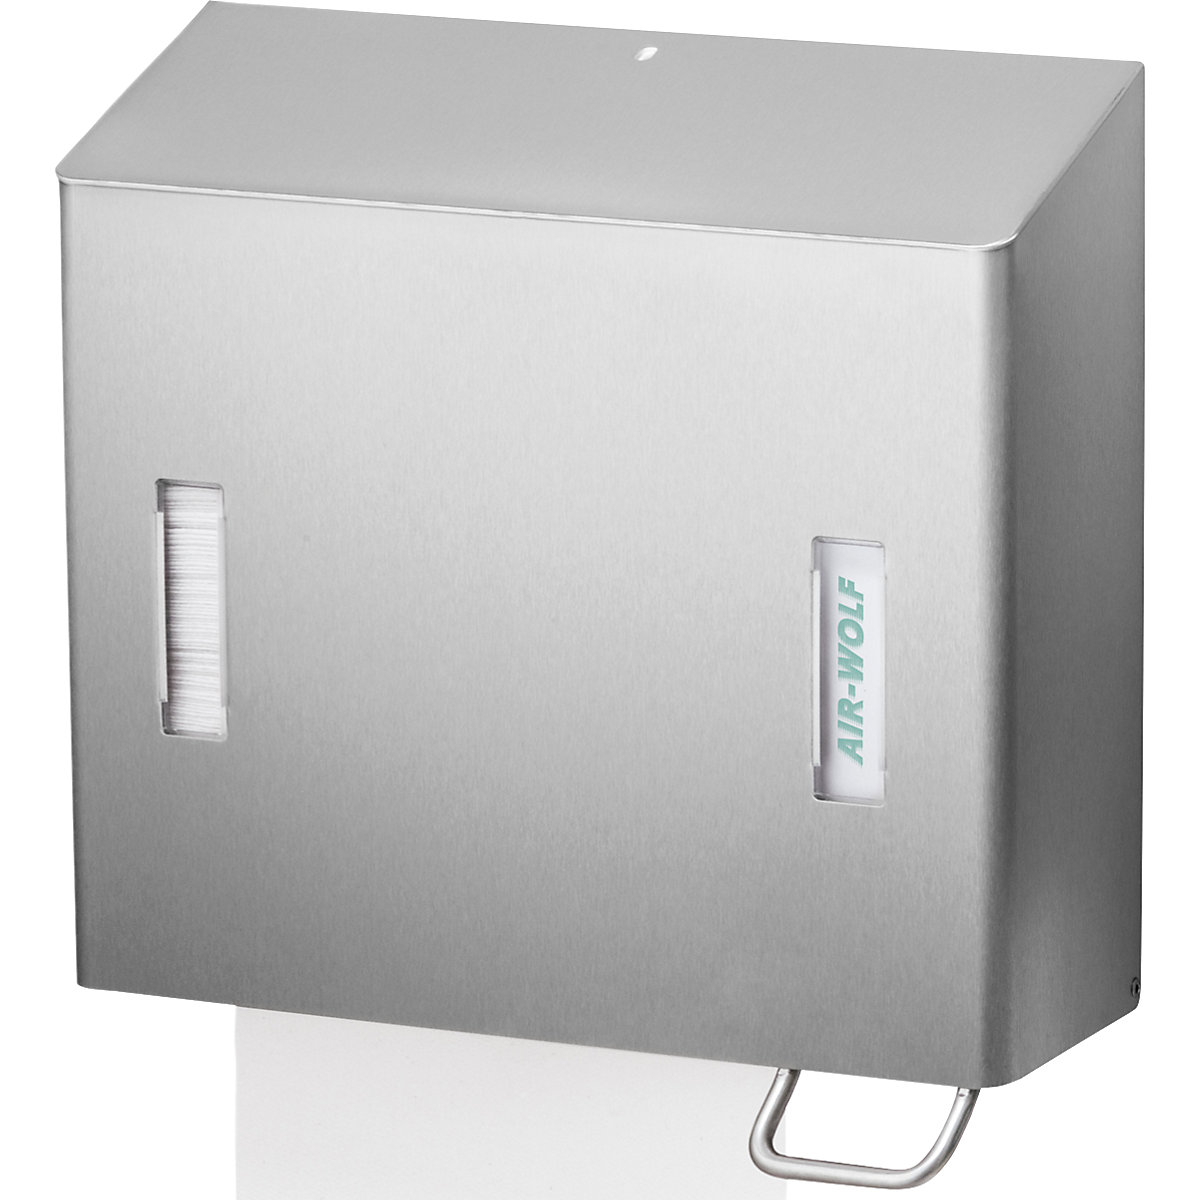 AIR-WOLF – Dispensador de jabón y de toallas de papel, capacidad 1,2 l, revestimiento transparente